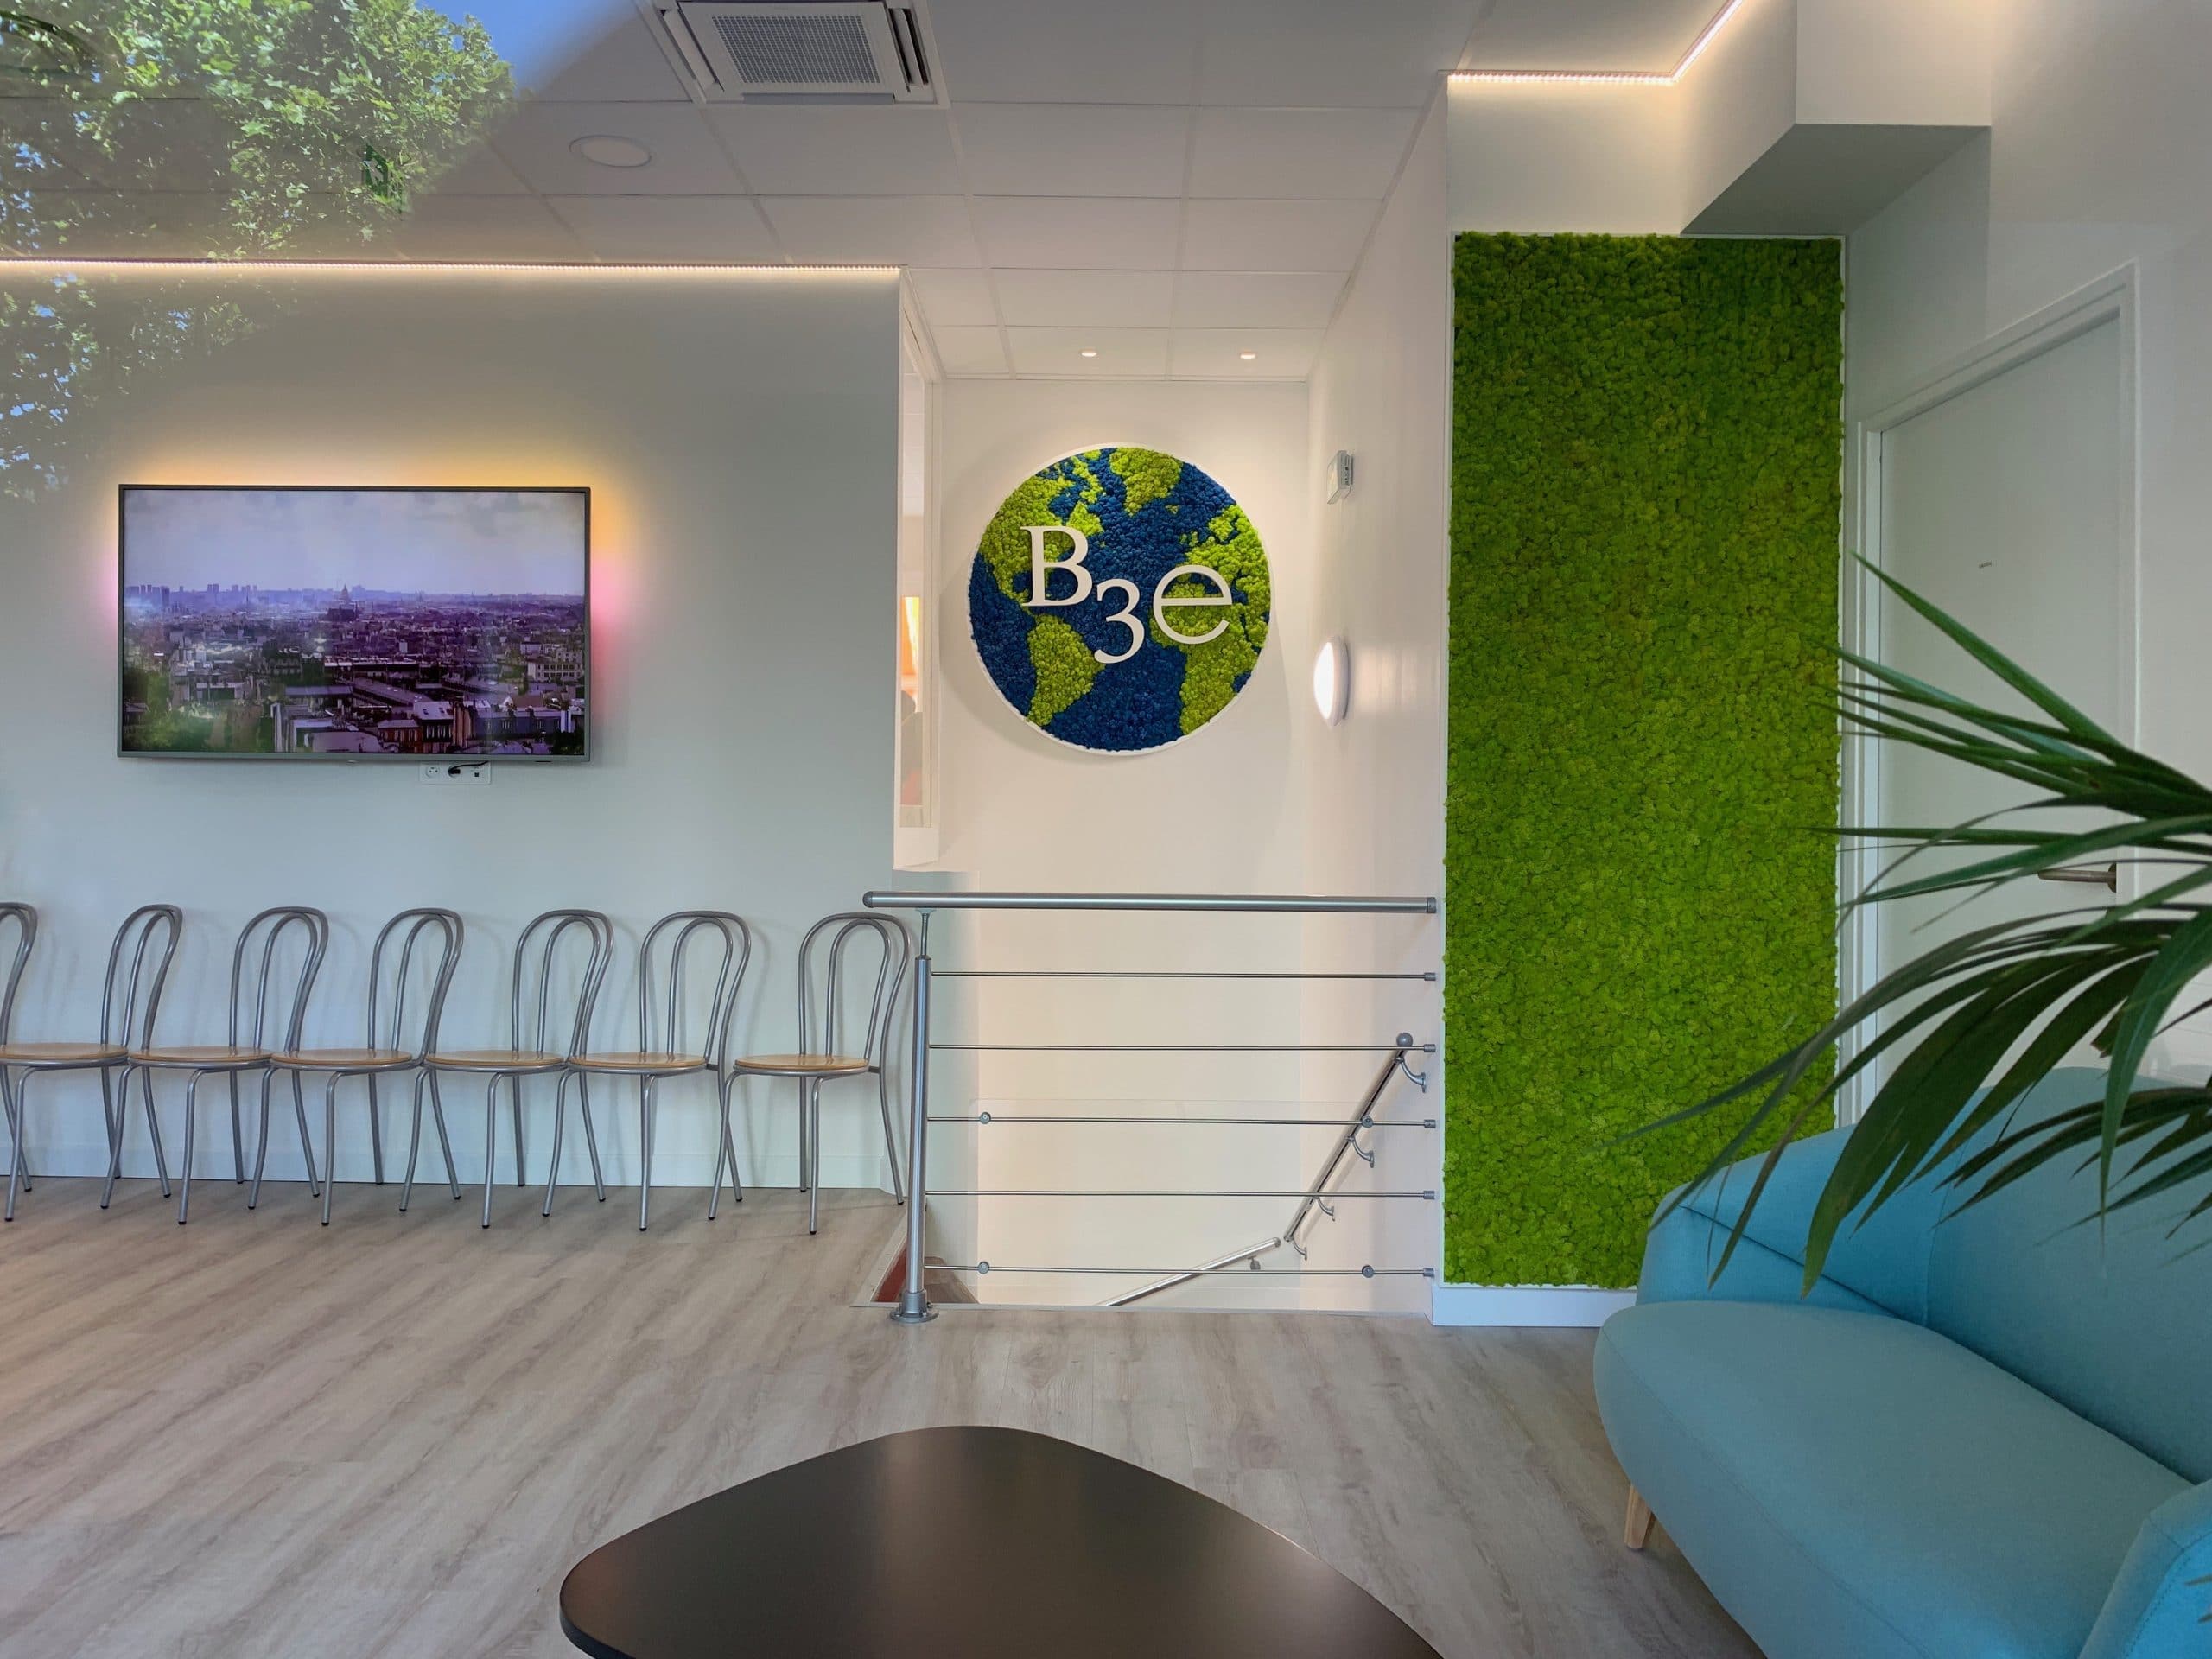 décoration et agencement bureaux murs végétal mousse accoustique, écran tv mural accueil, décoratrice UFDI Synergie Déco